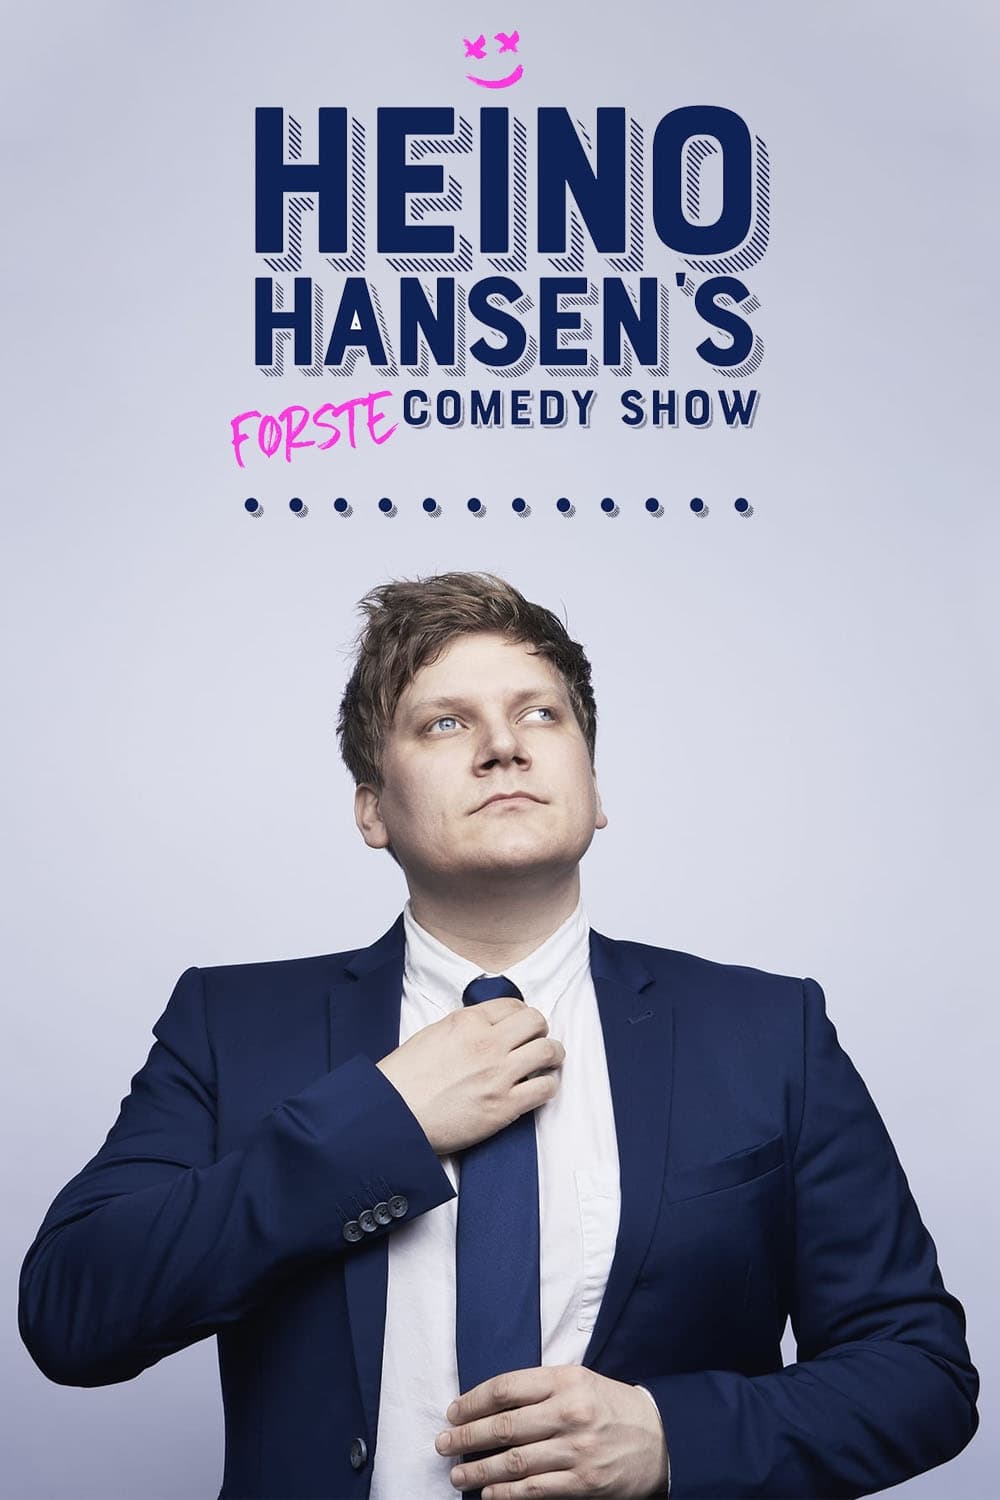 Heino Hansens første comedy show